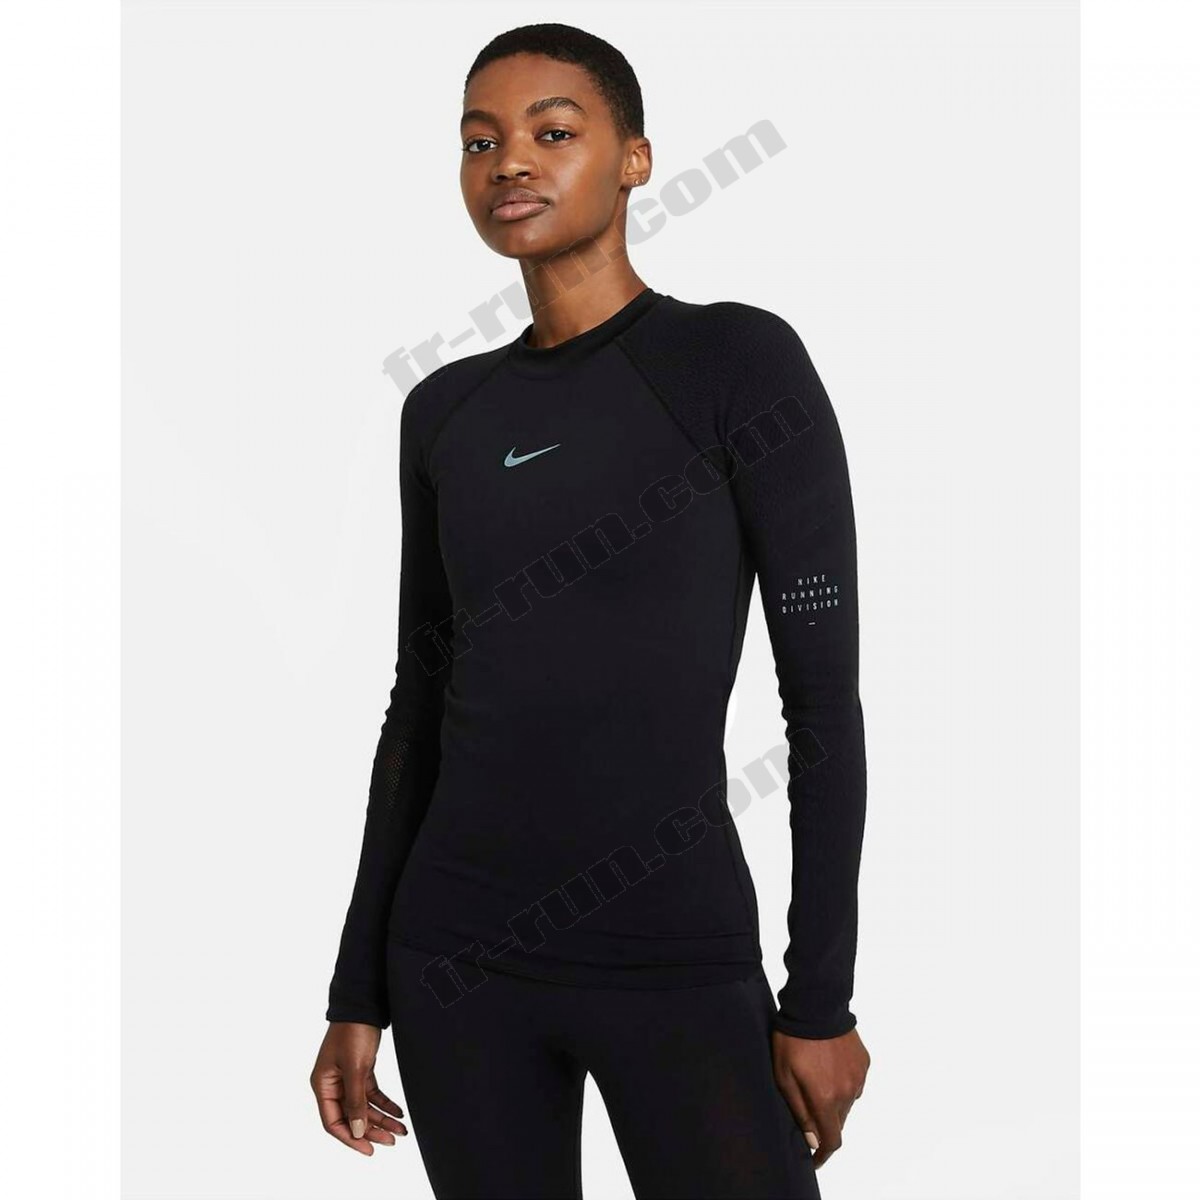 Nike/Course à pied femme NIKE T-shirt femme Nike Run Division √ Nouveau style √ Soldes - -1